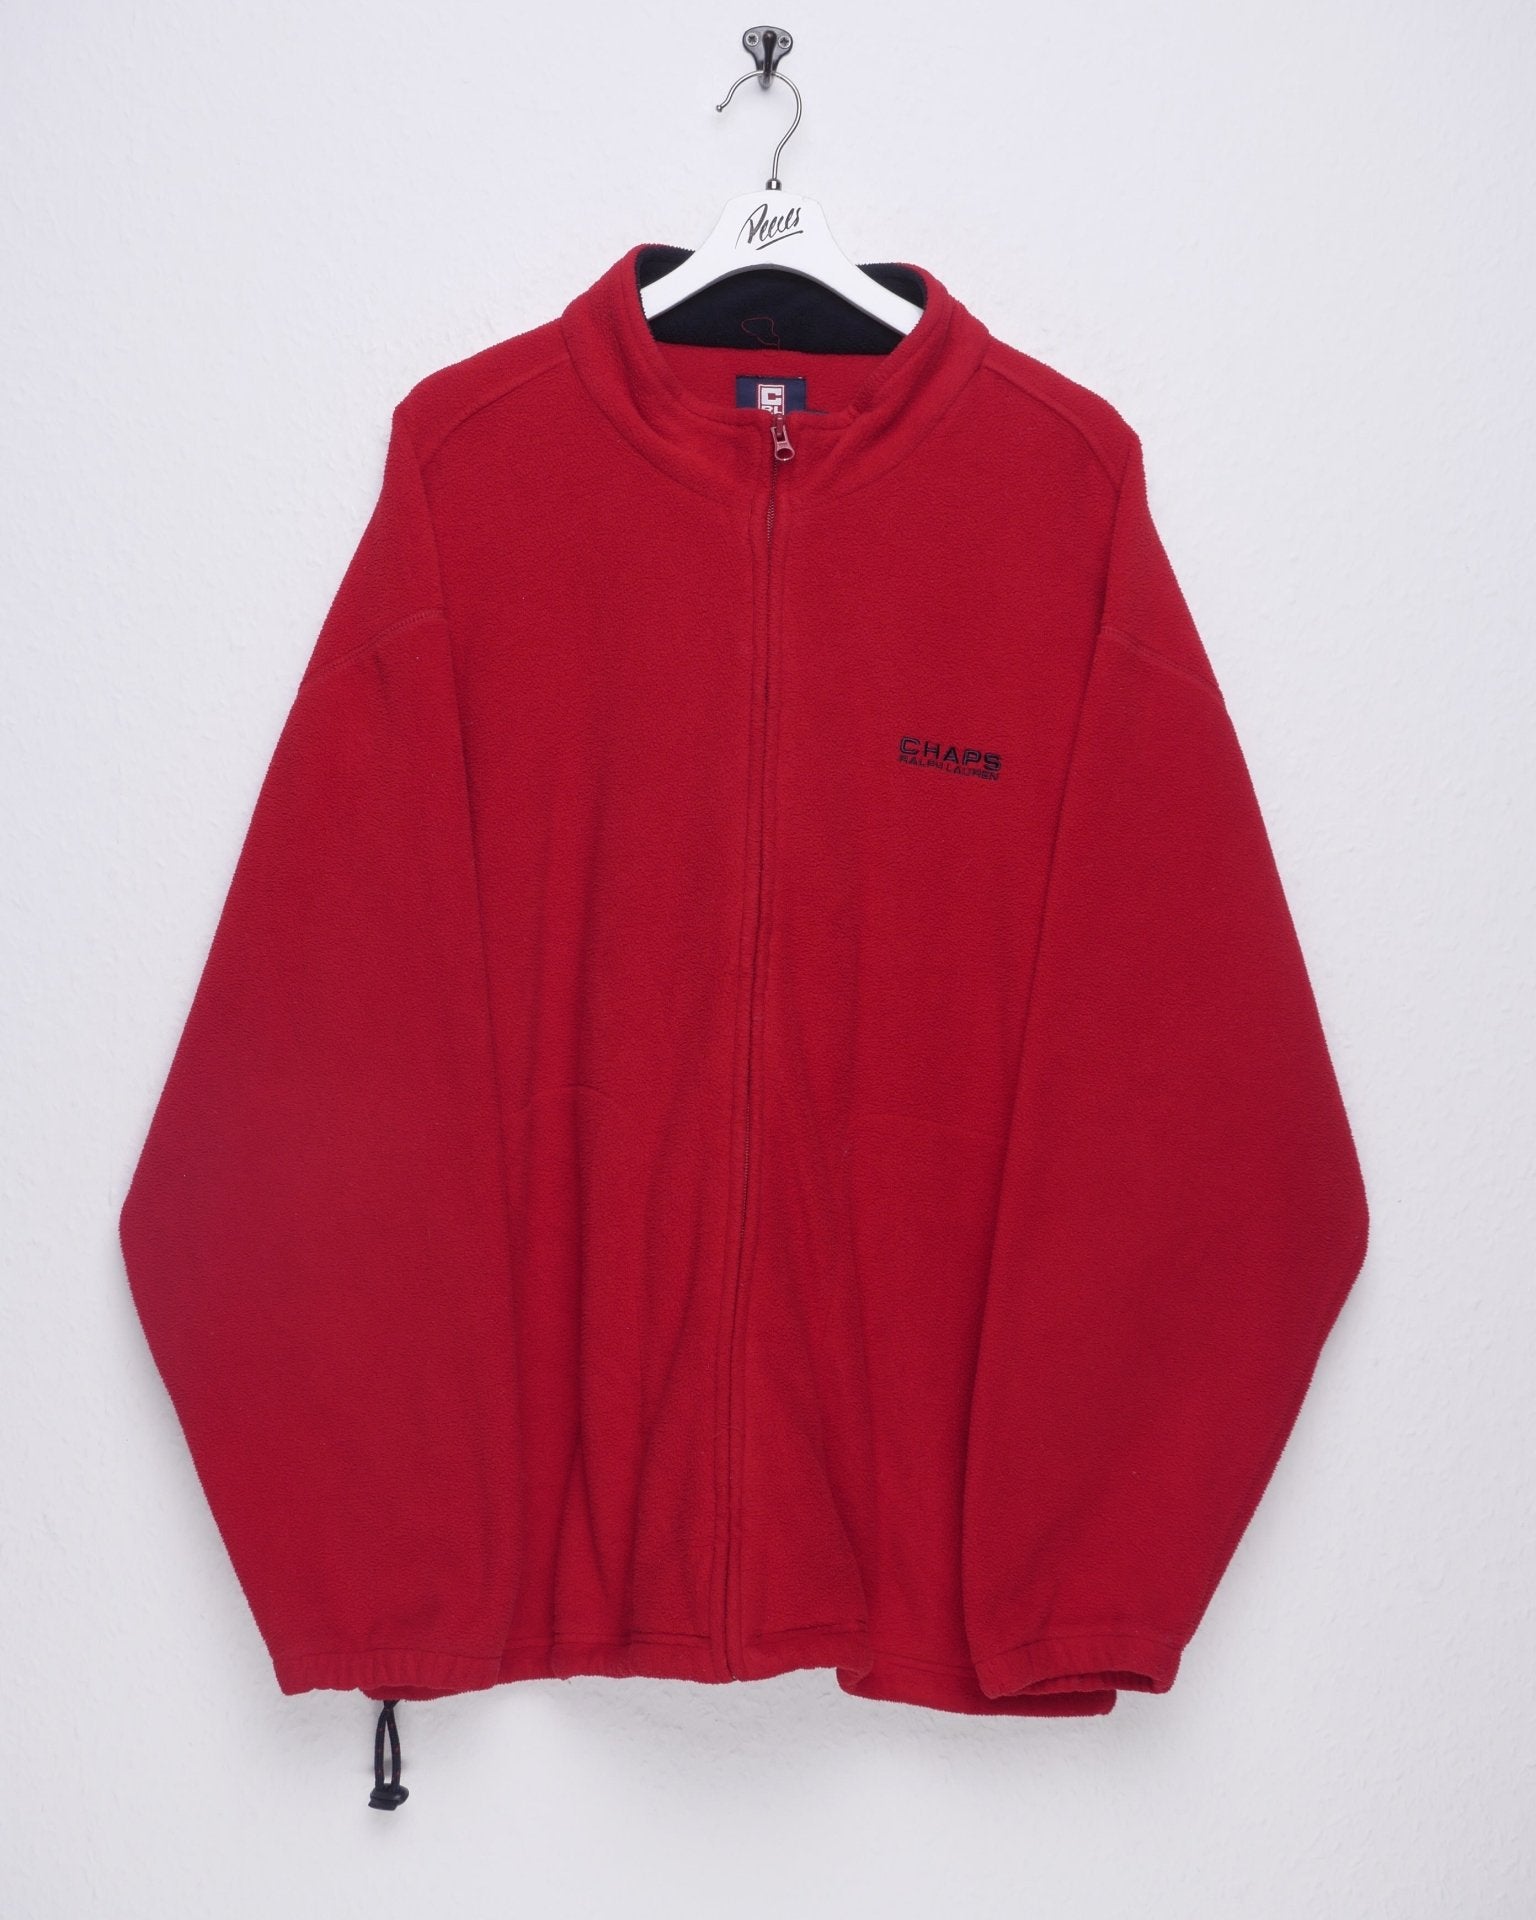 Chaps by Ralph Lauren embroidered Logo red Fleece Zip Sweater - Peeces